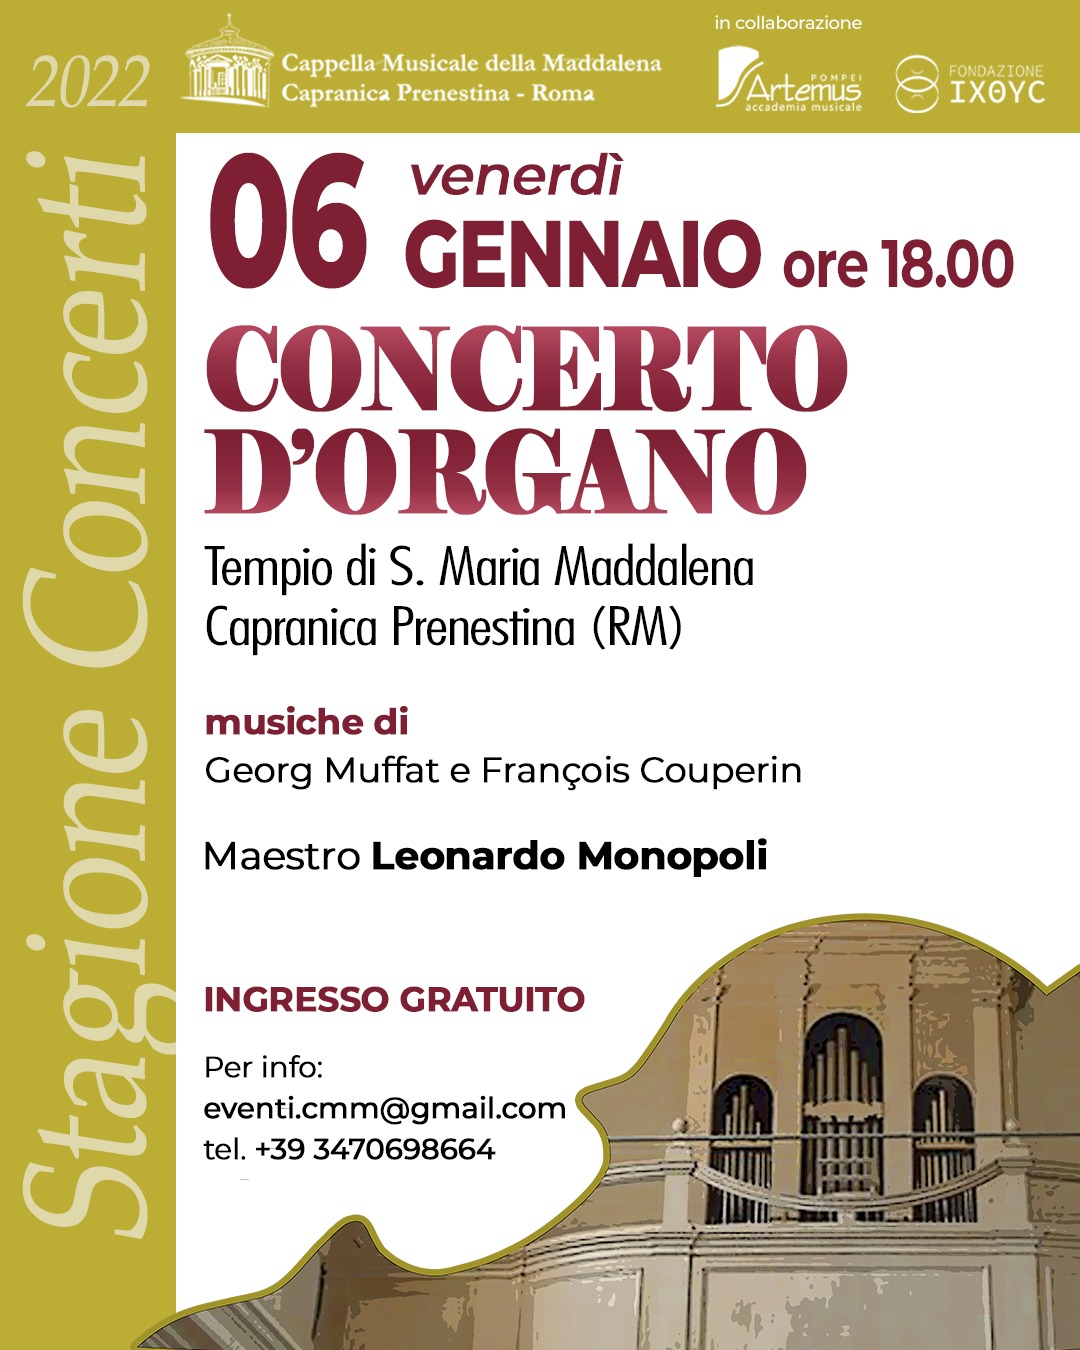 6gen23-concerto.organo